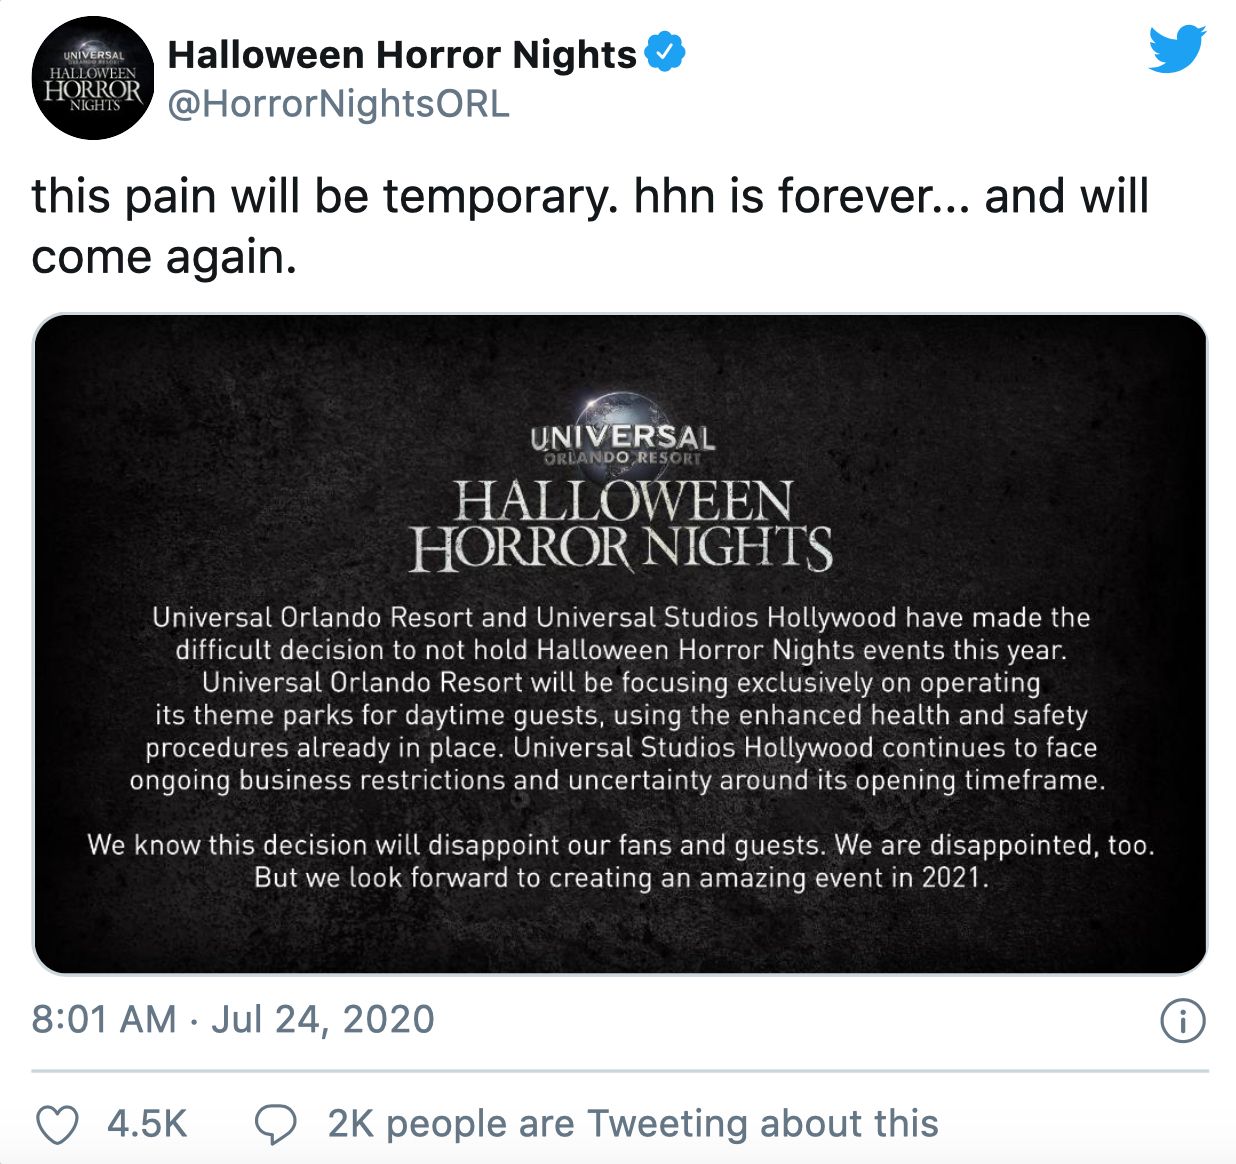 Halloween Horror Nights Canceled Tweet